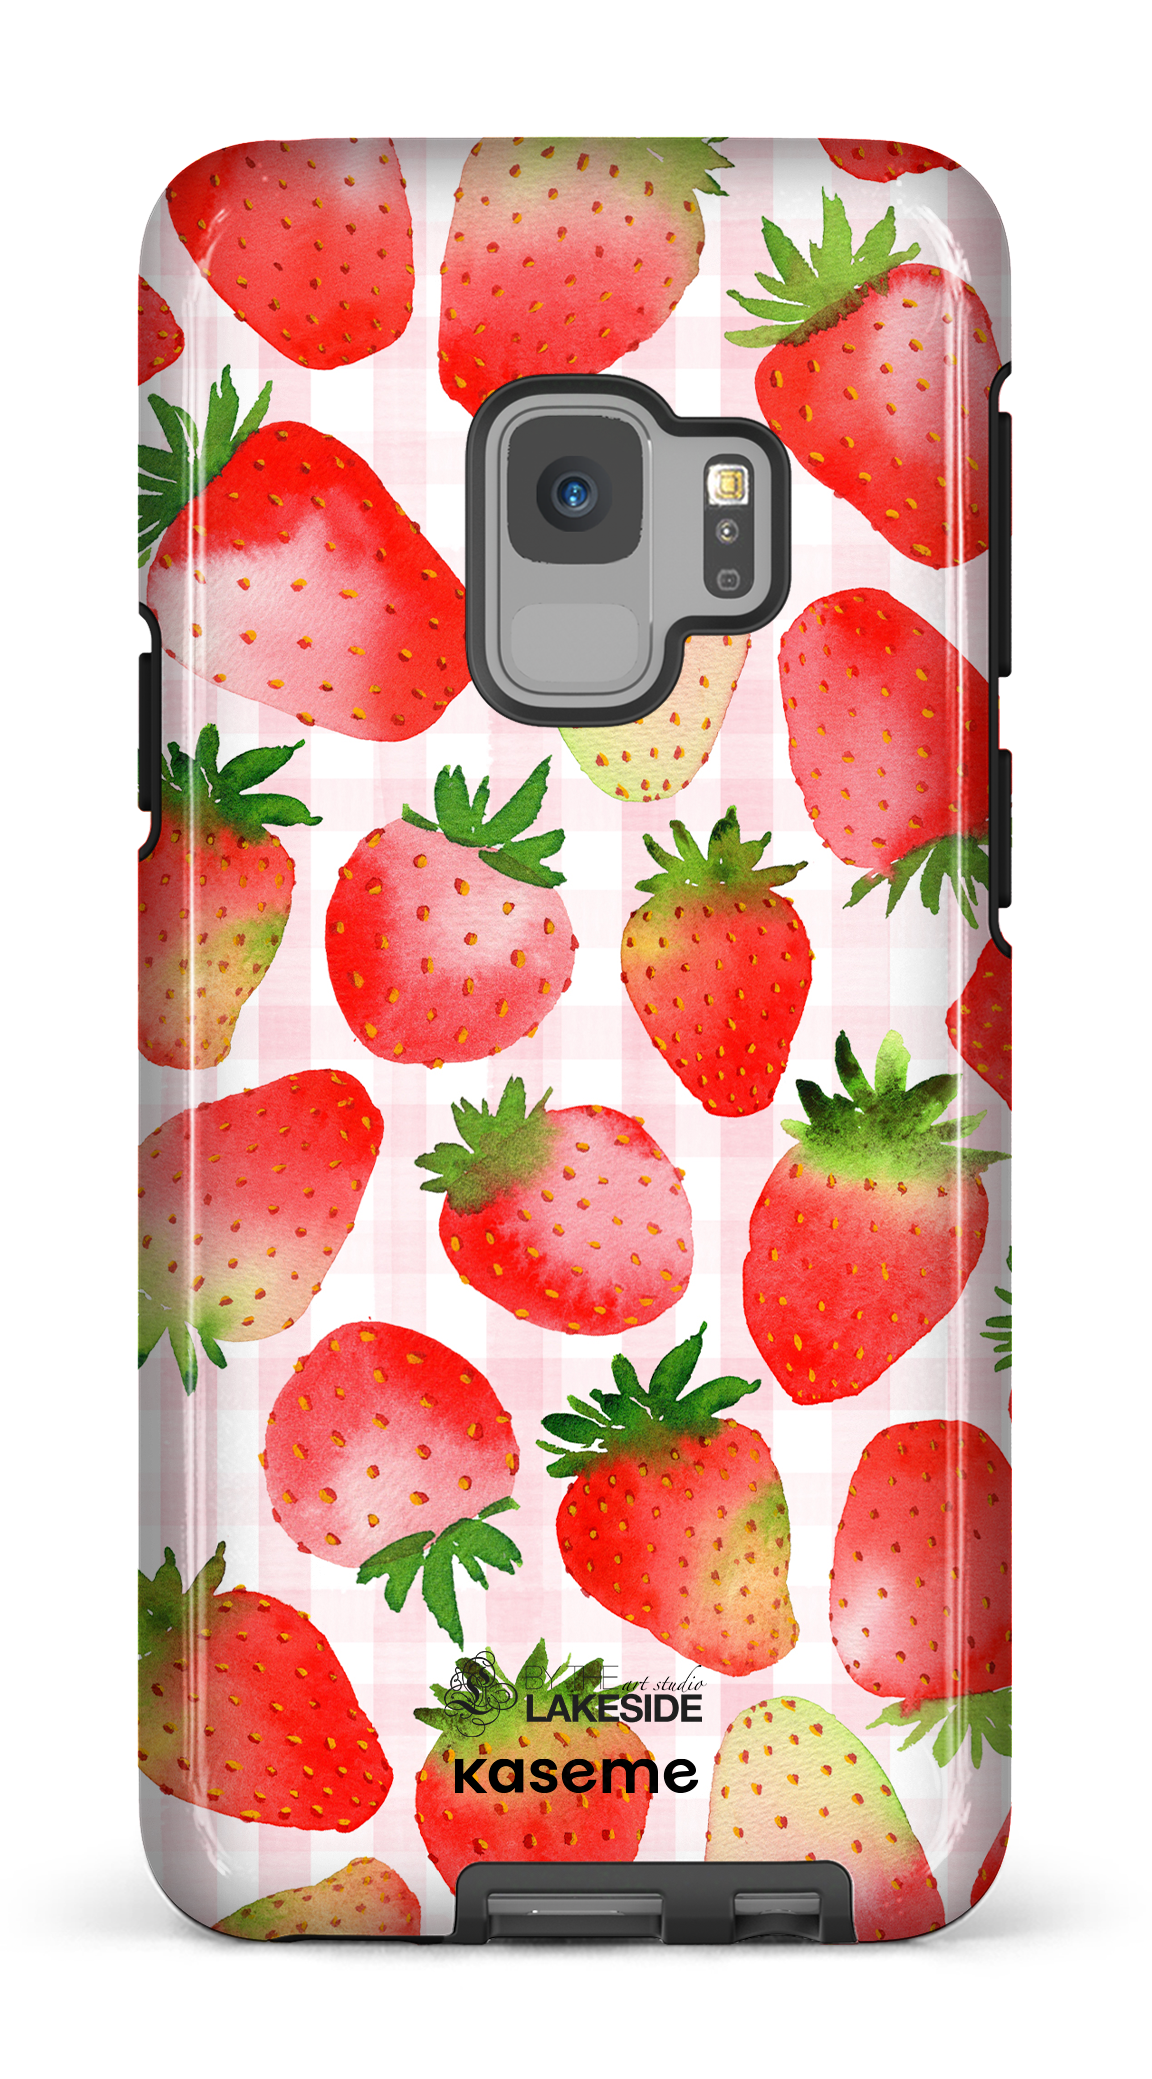 Strawberry Fields by Pooja Umrani - Galaxy S9